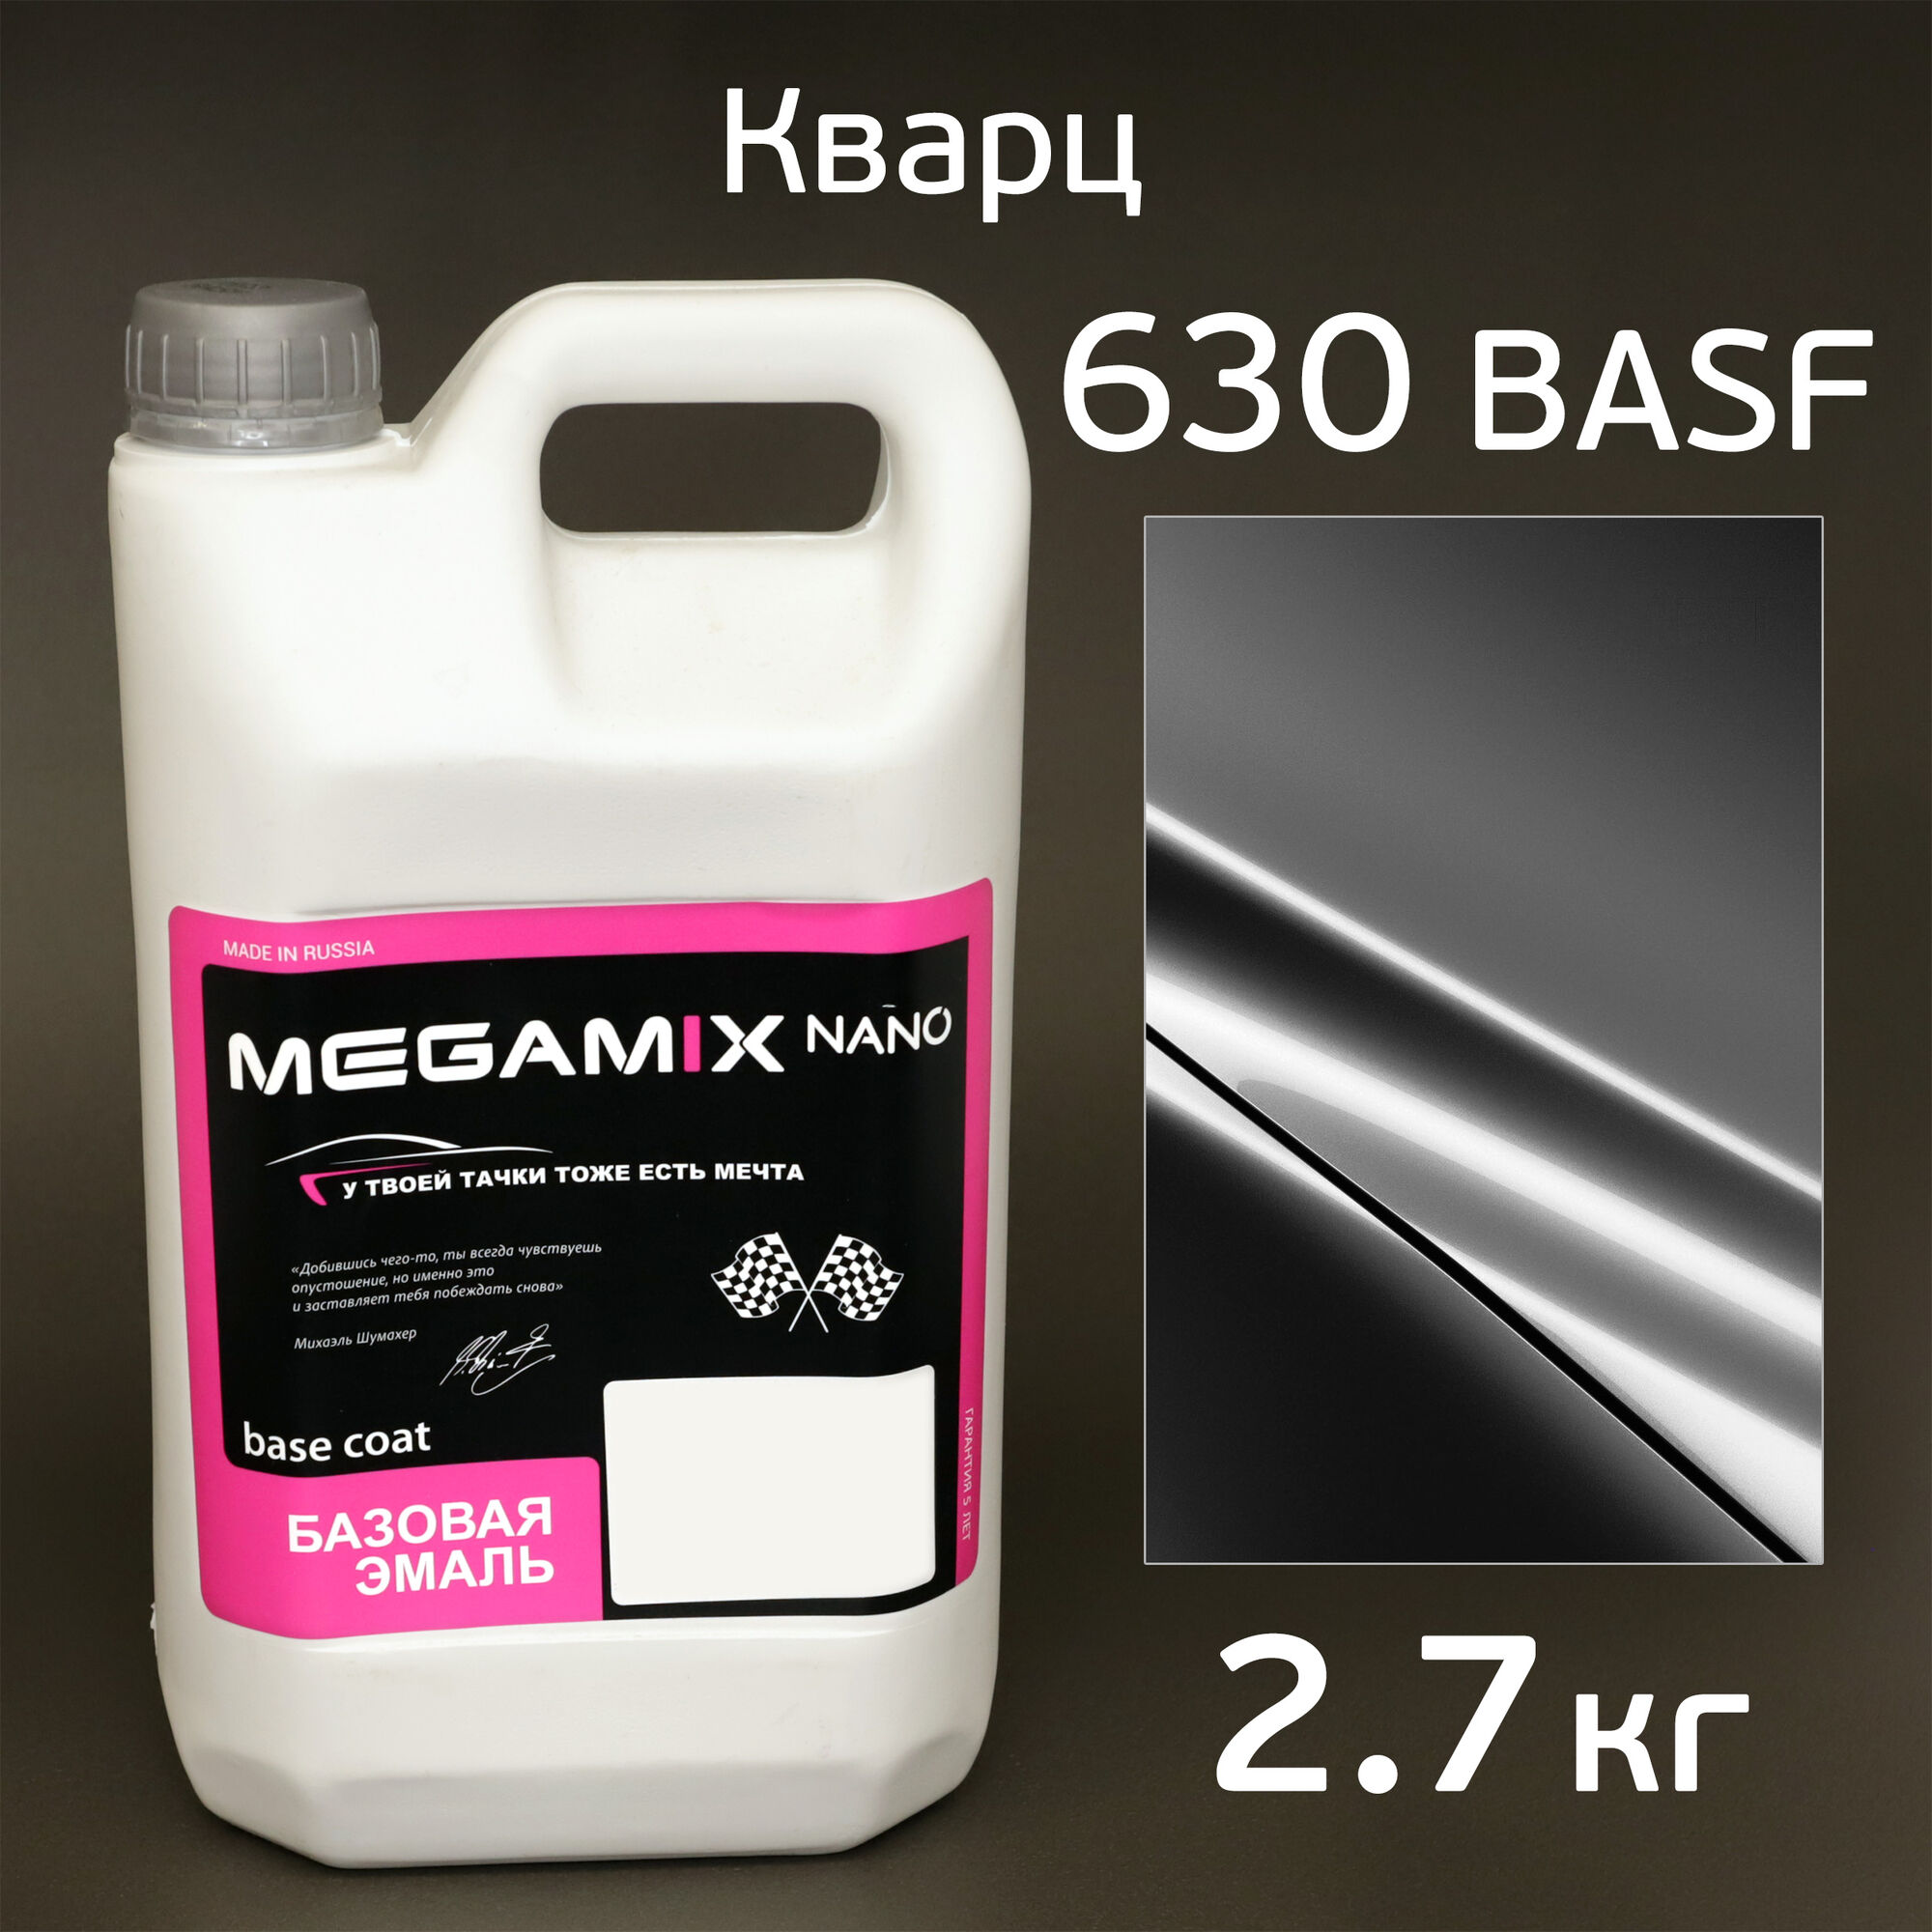 Автоэмаль MegaMIX (2.7кг) Lada 630 BASF Кварц, металлик, базисная эмаль под лак